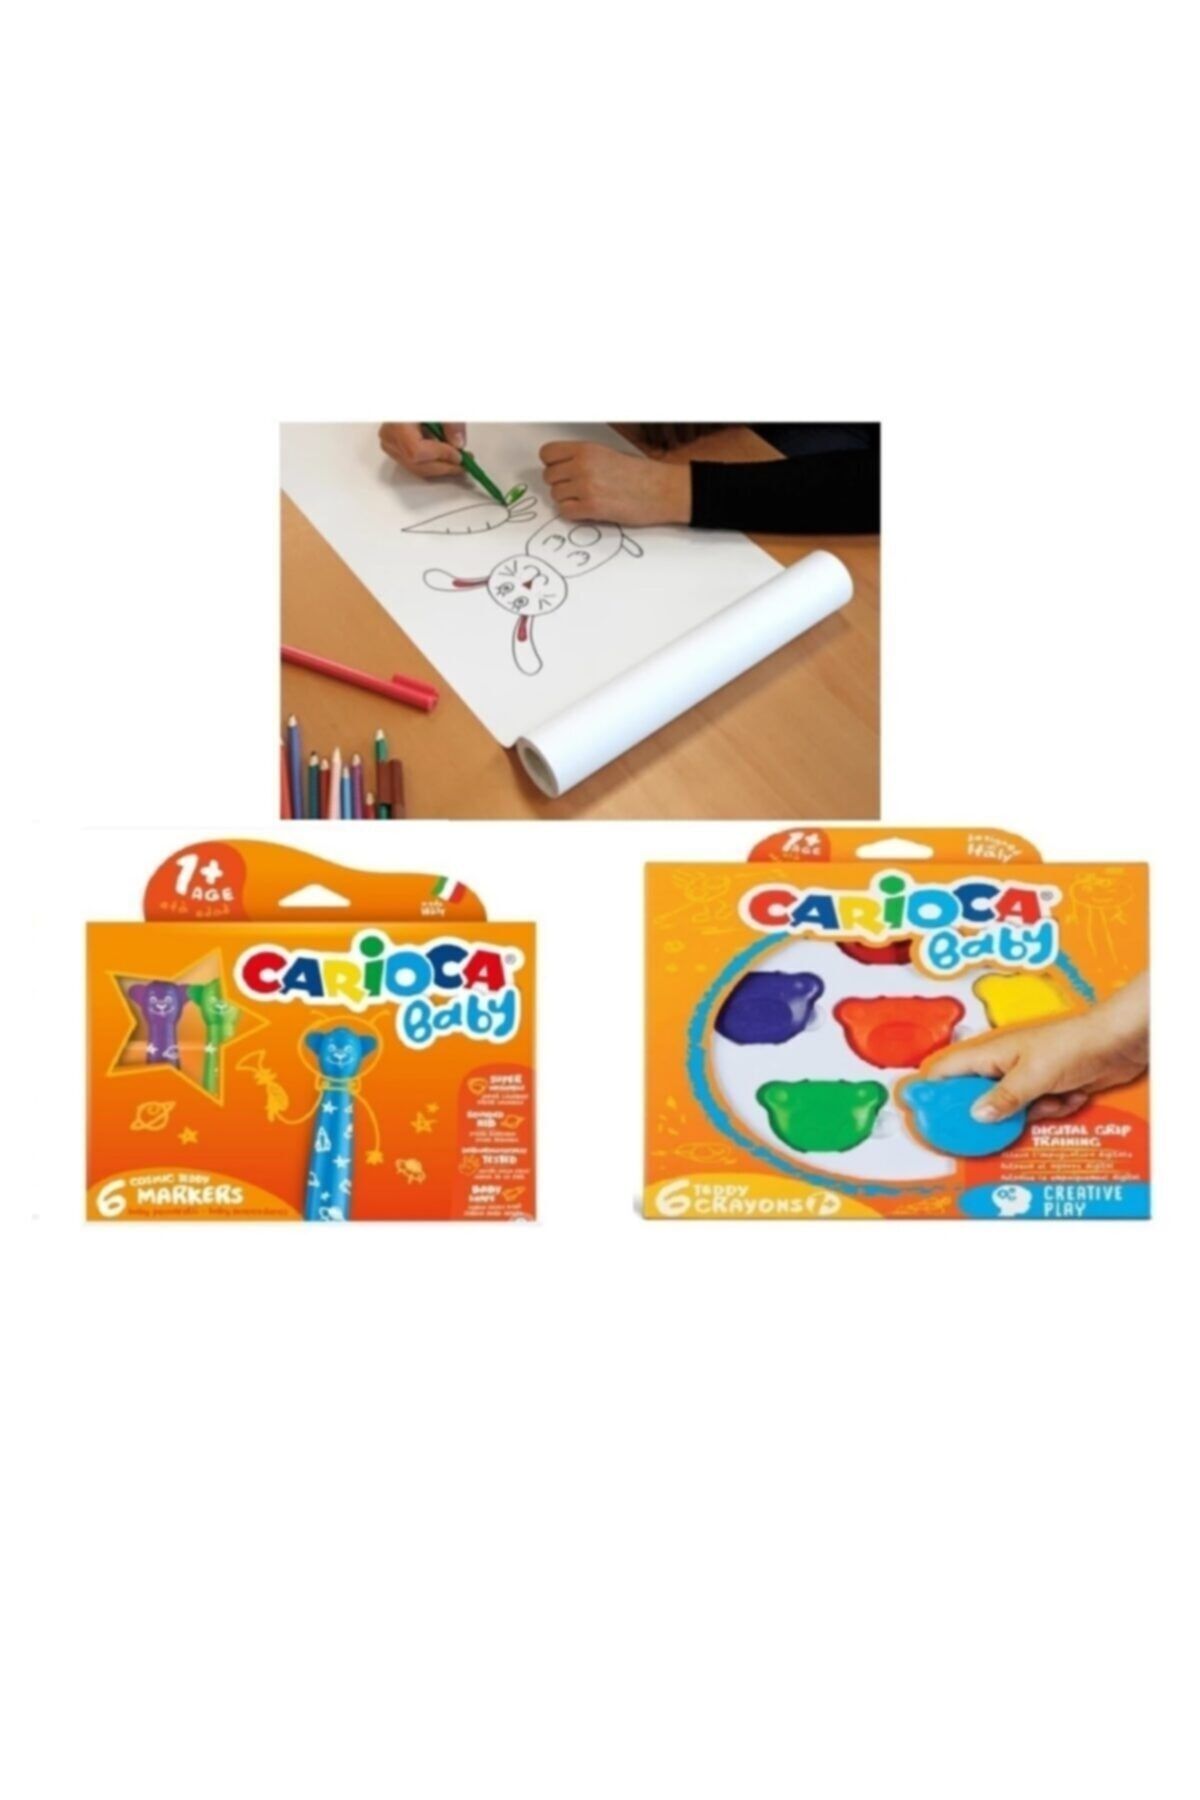 Carioca Yapışkanlı Resim Kağıdı 30 Cm X 12 Metre + Carioca Baby Teddy Crayon + Teddy Jumbo Keçeli